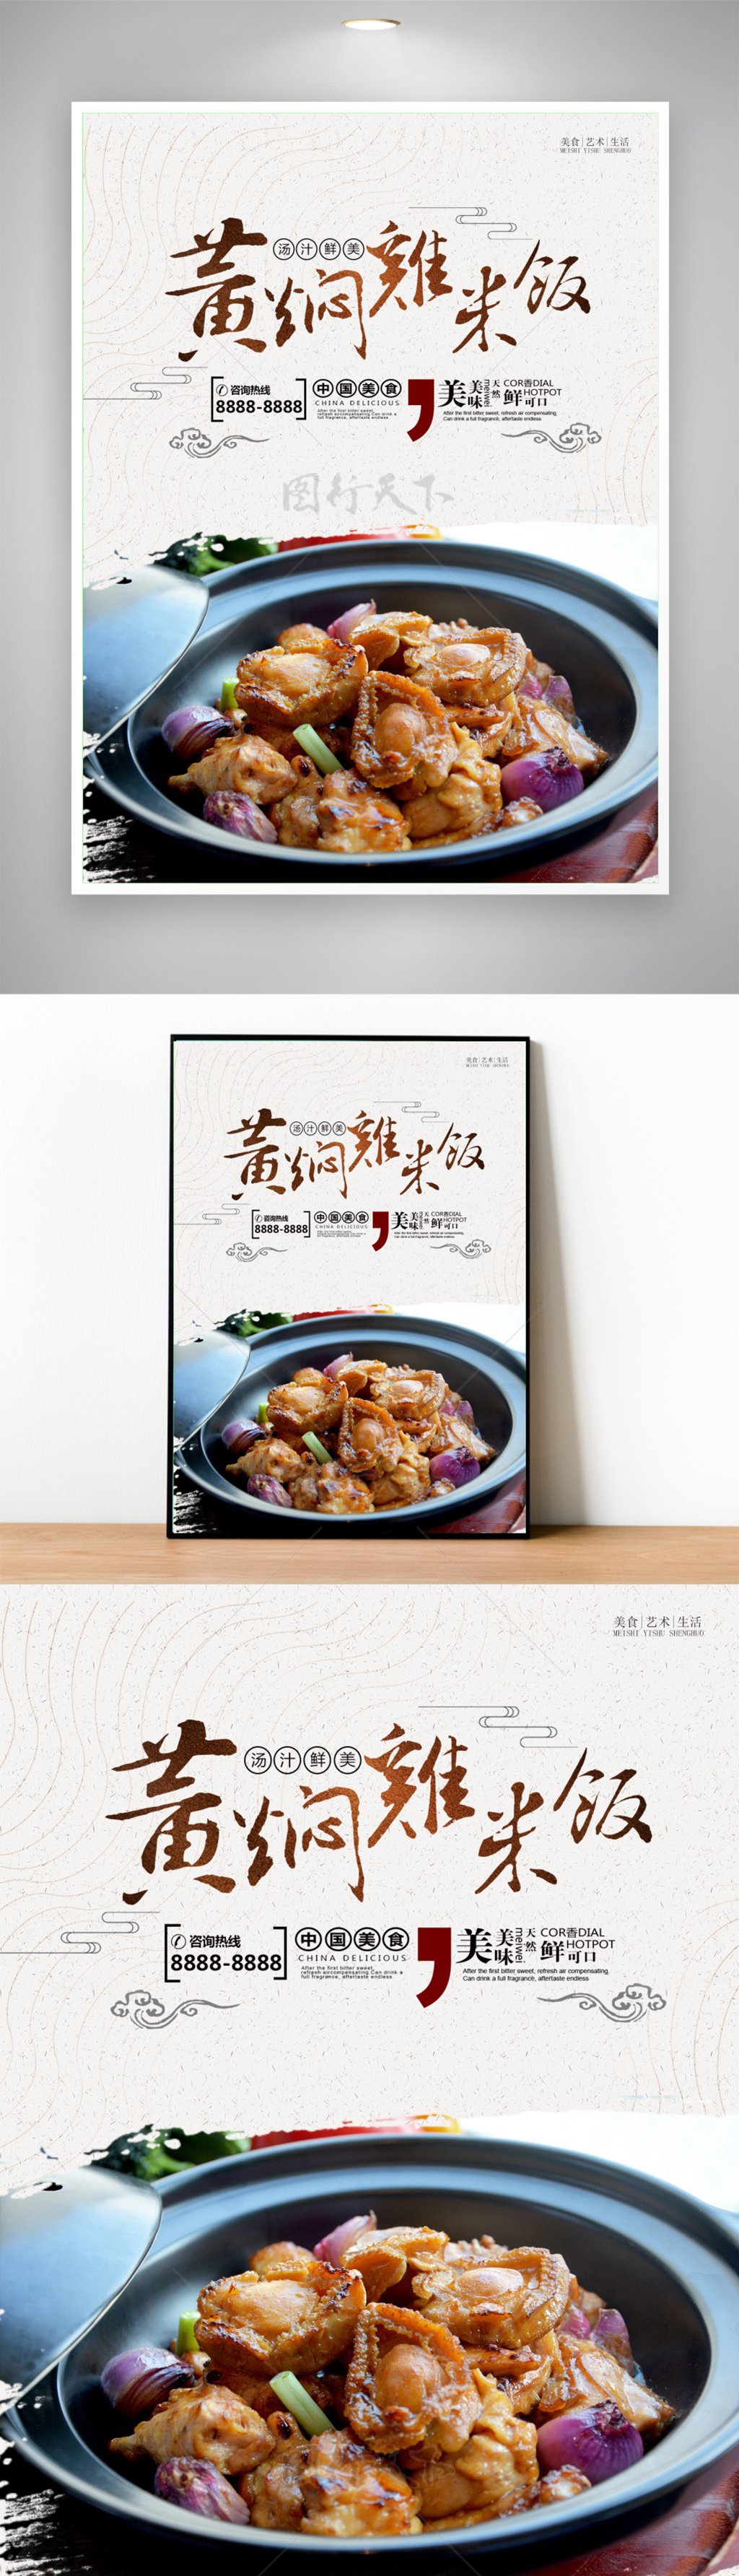 中国风黄焖鸡米饭宣传美食海报